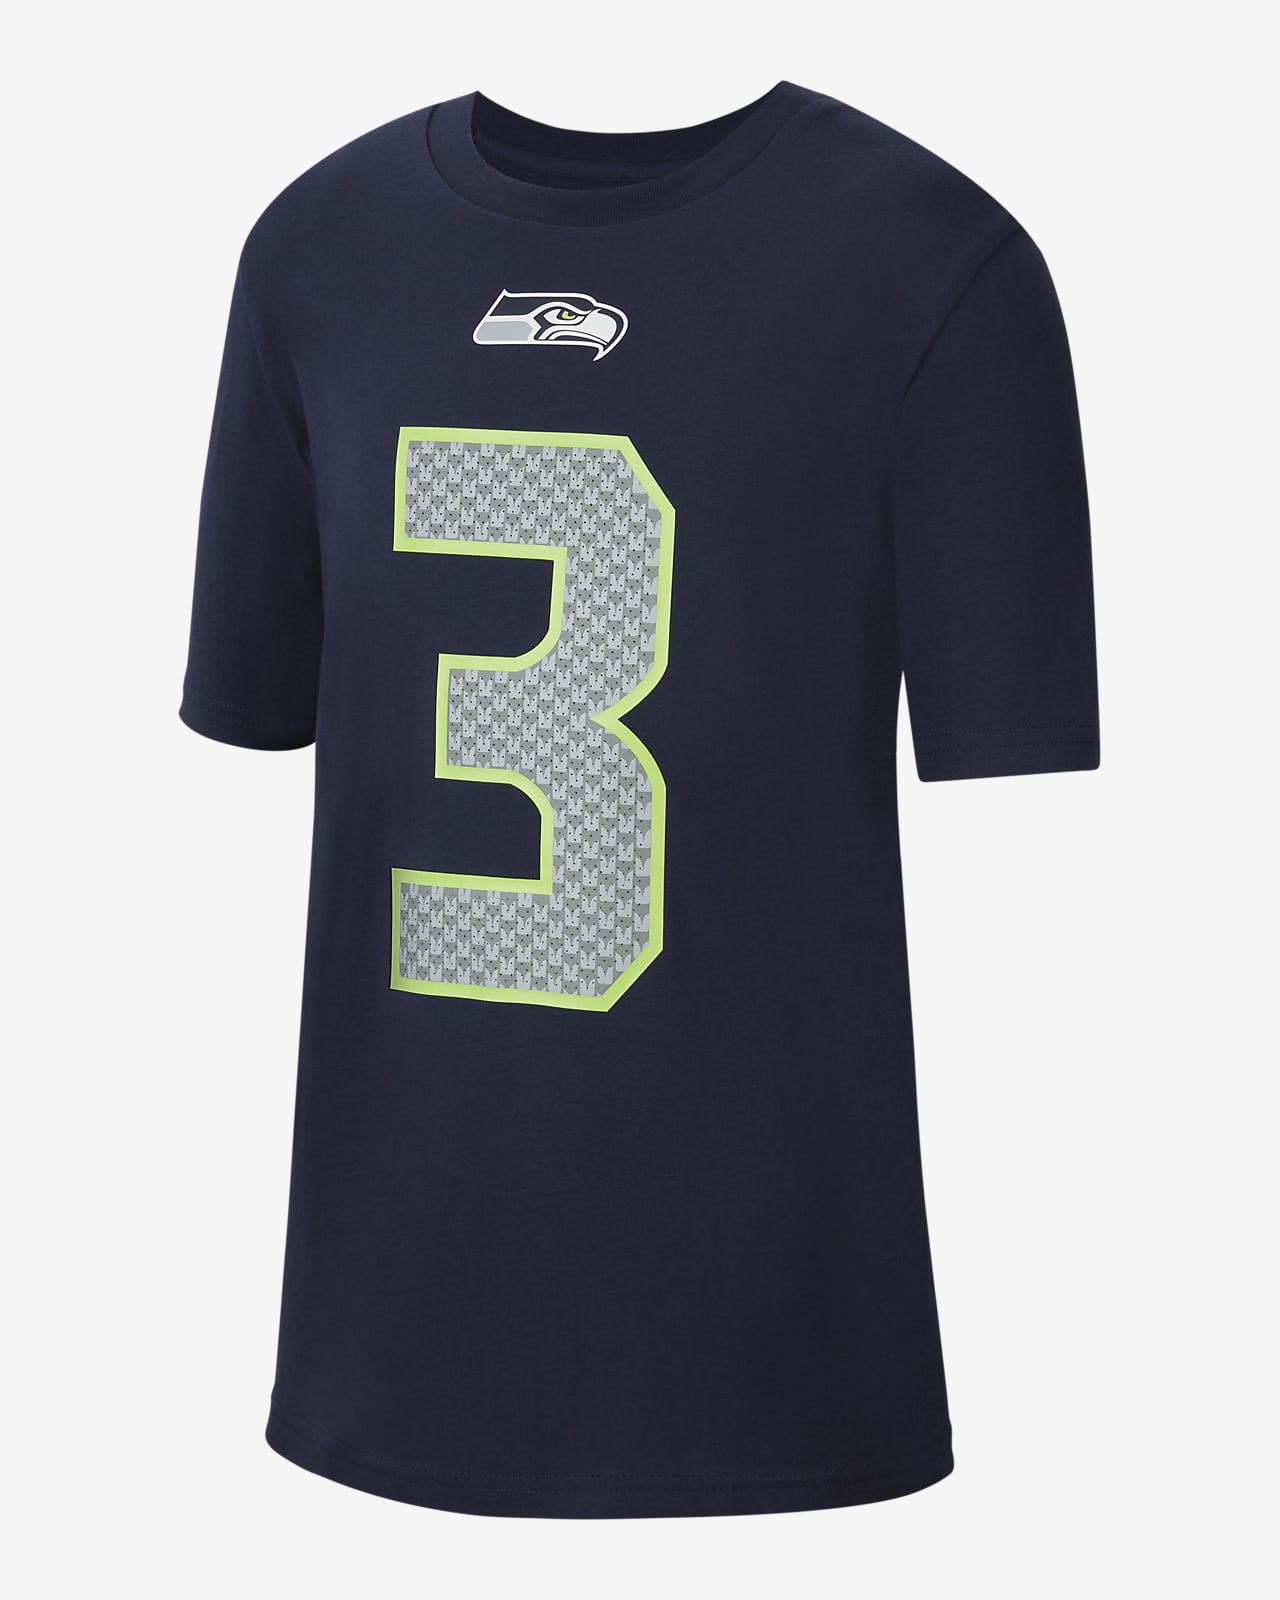 Nike (NFL Seattle Seahawks) T-Shirt für ältere Kinder